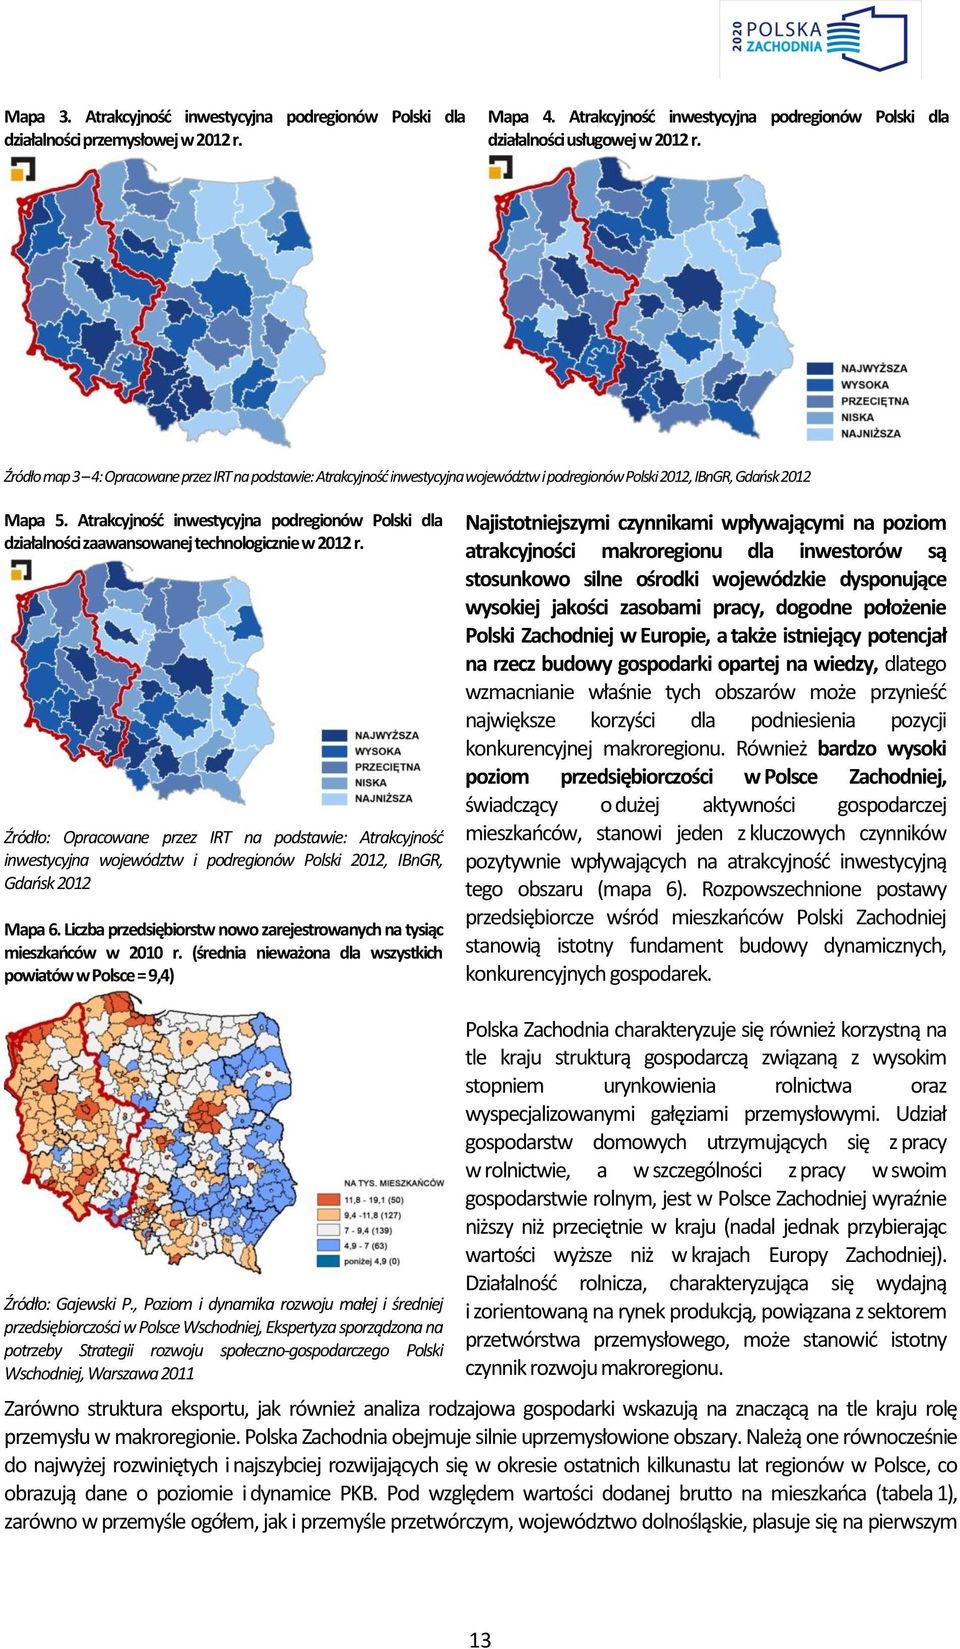 Atrakcyjność inwestycyjna podregionów Polski dla działalności zaawansowanej technologicznie w 2012 r.